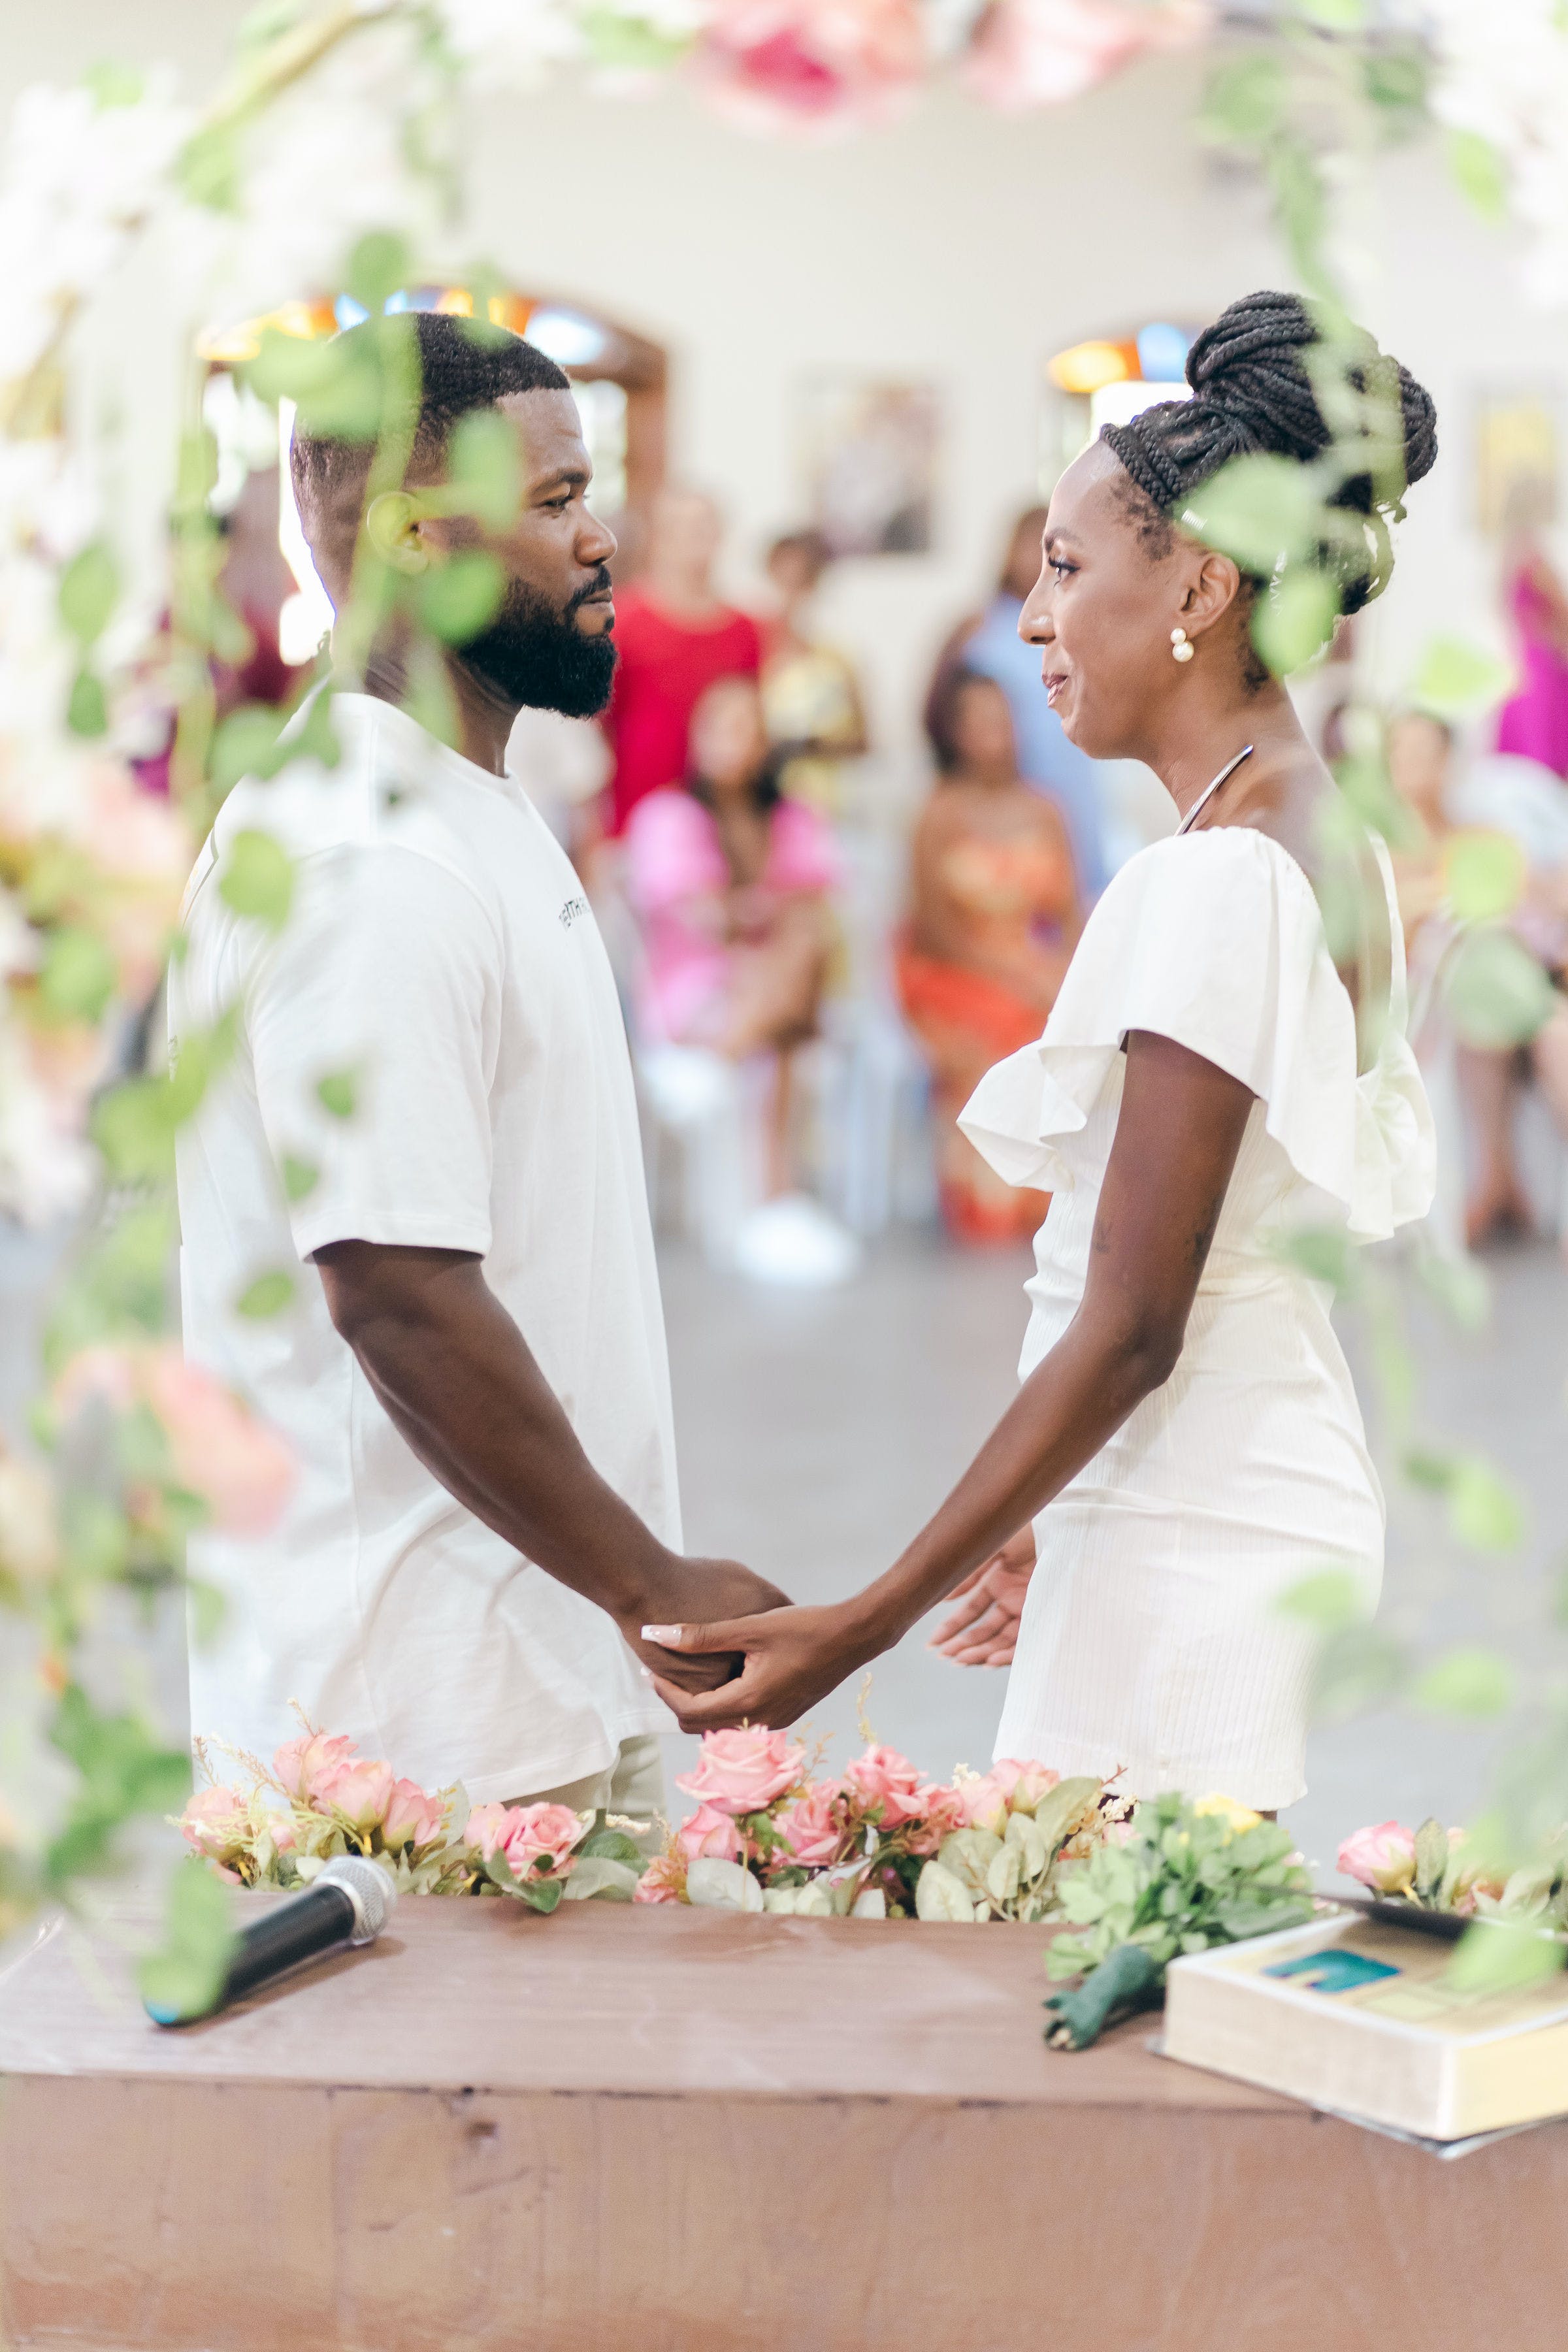 Un couple sur le point de se marier devant ses proches | Source : Pexels